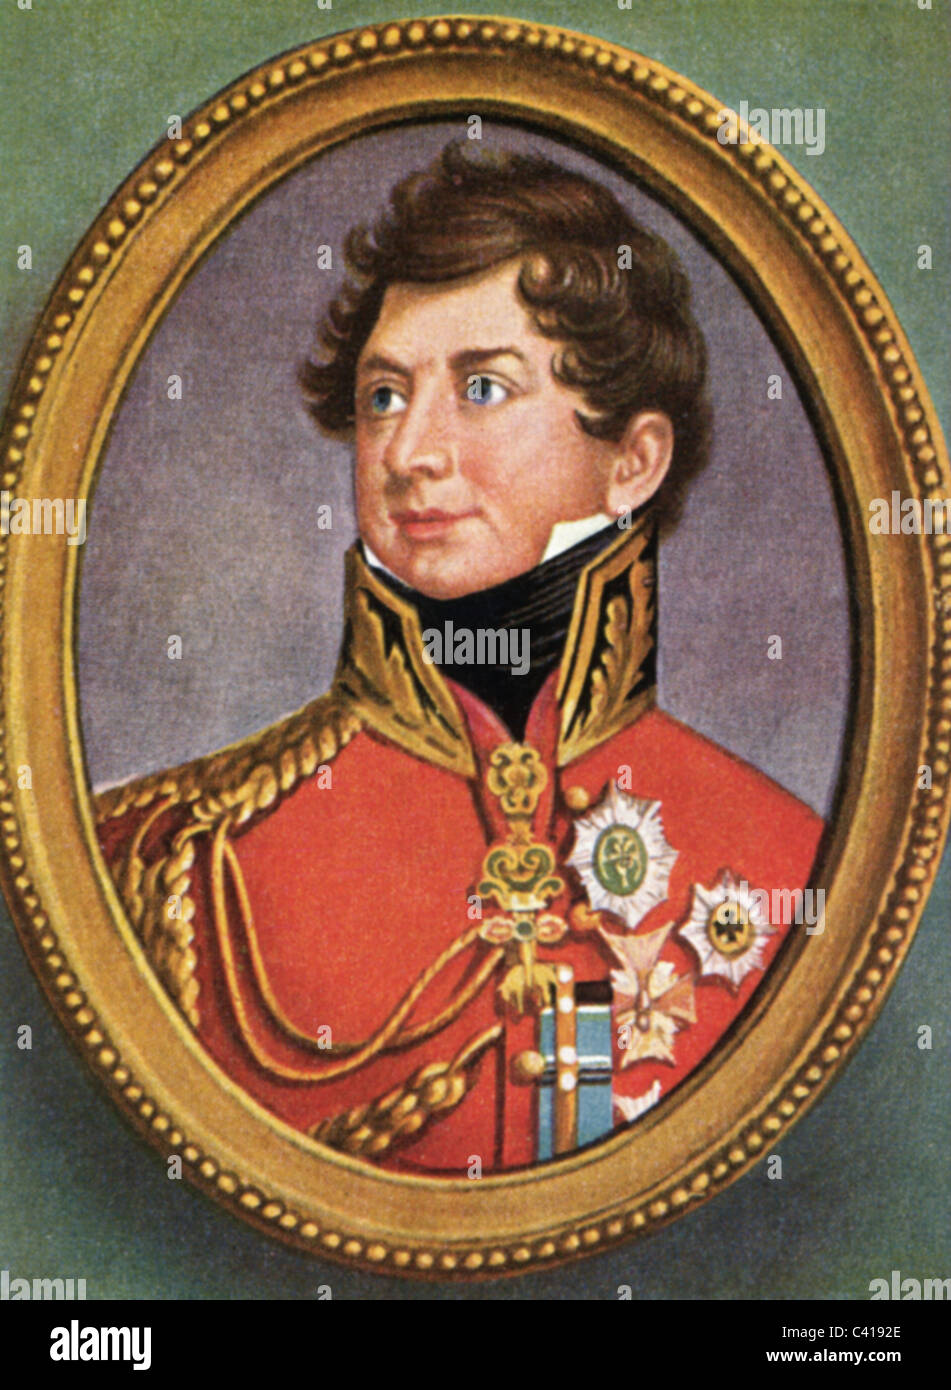 George IV, 12.8.1762 - 26.6.1830, roi de Grande-Bretagne 29.1.1820 - 26.6.1830, portrait, imprimé couleur après miniature, début du XIXe siècle, carte à cigarettes, Allemagne, 1933, , Banque D'Images